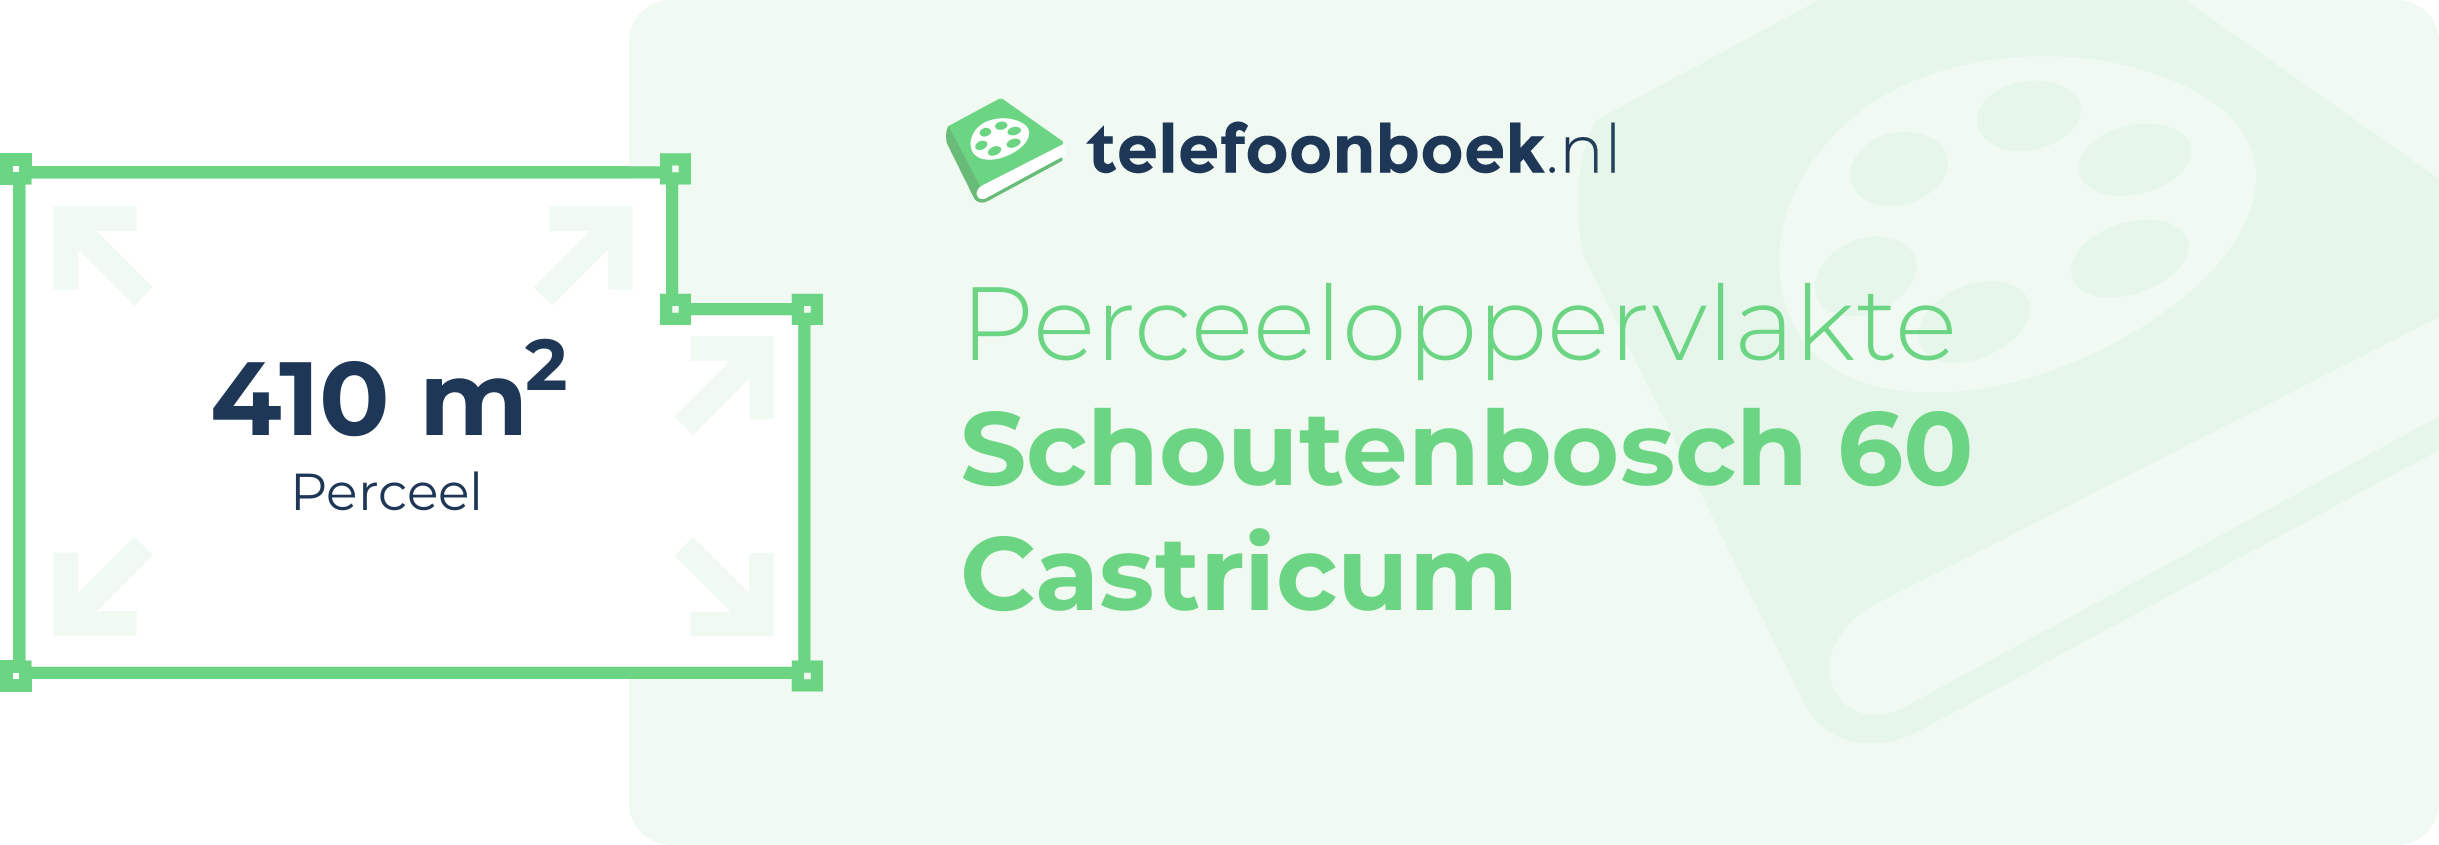 Perceeloppervlakte Schoutenbosch 60 Castricum